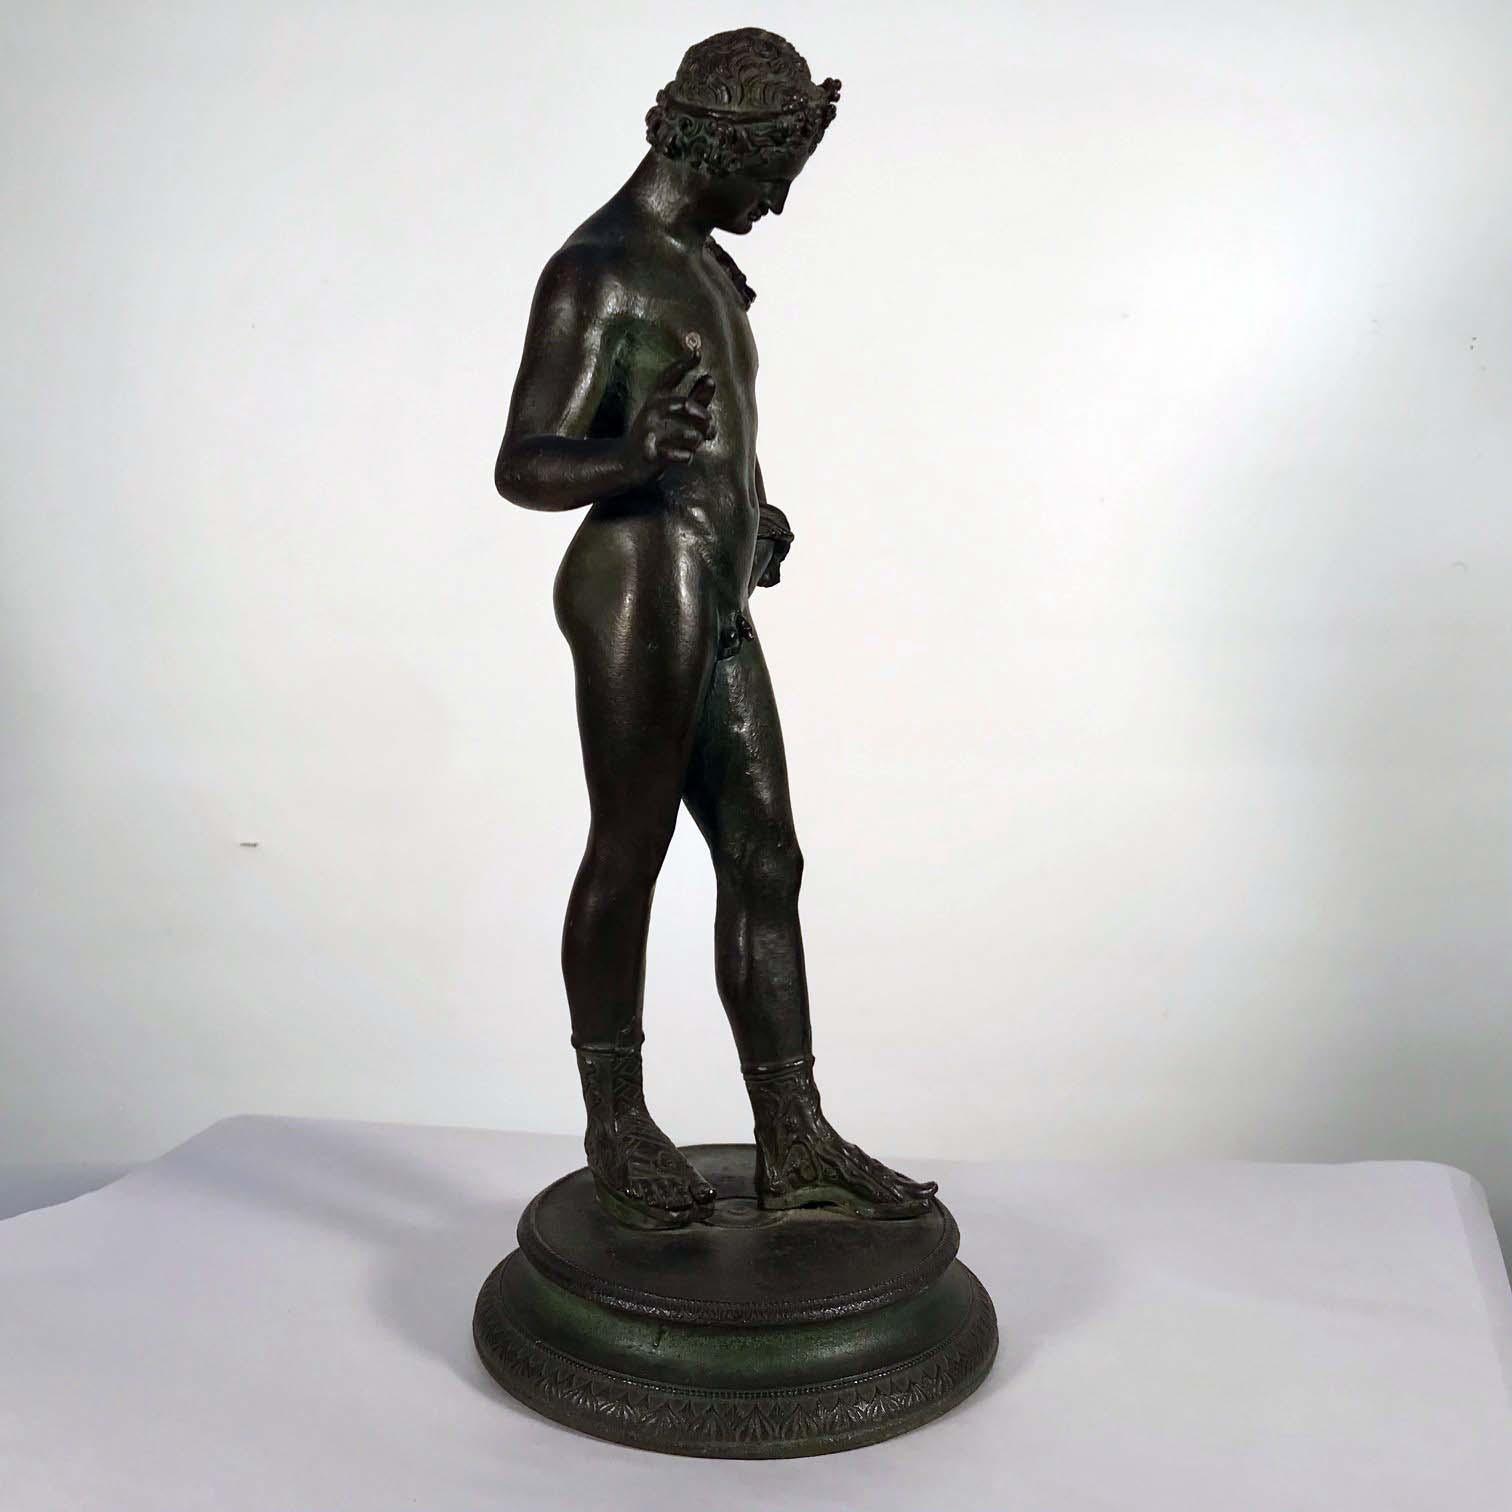 Figure de Narcisse en bronze de la fin du XIXe siècle / début du XXe siècle, d'après l'Antiquité. Il porte une couronne dans les cheveux et un sac à vin en peau de chèvre et repose sur une base circulaire.
Narcisse était un chasseur connu pour sa